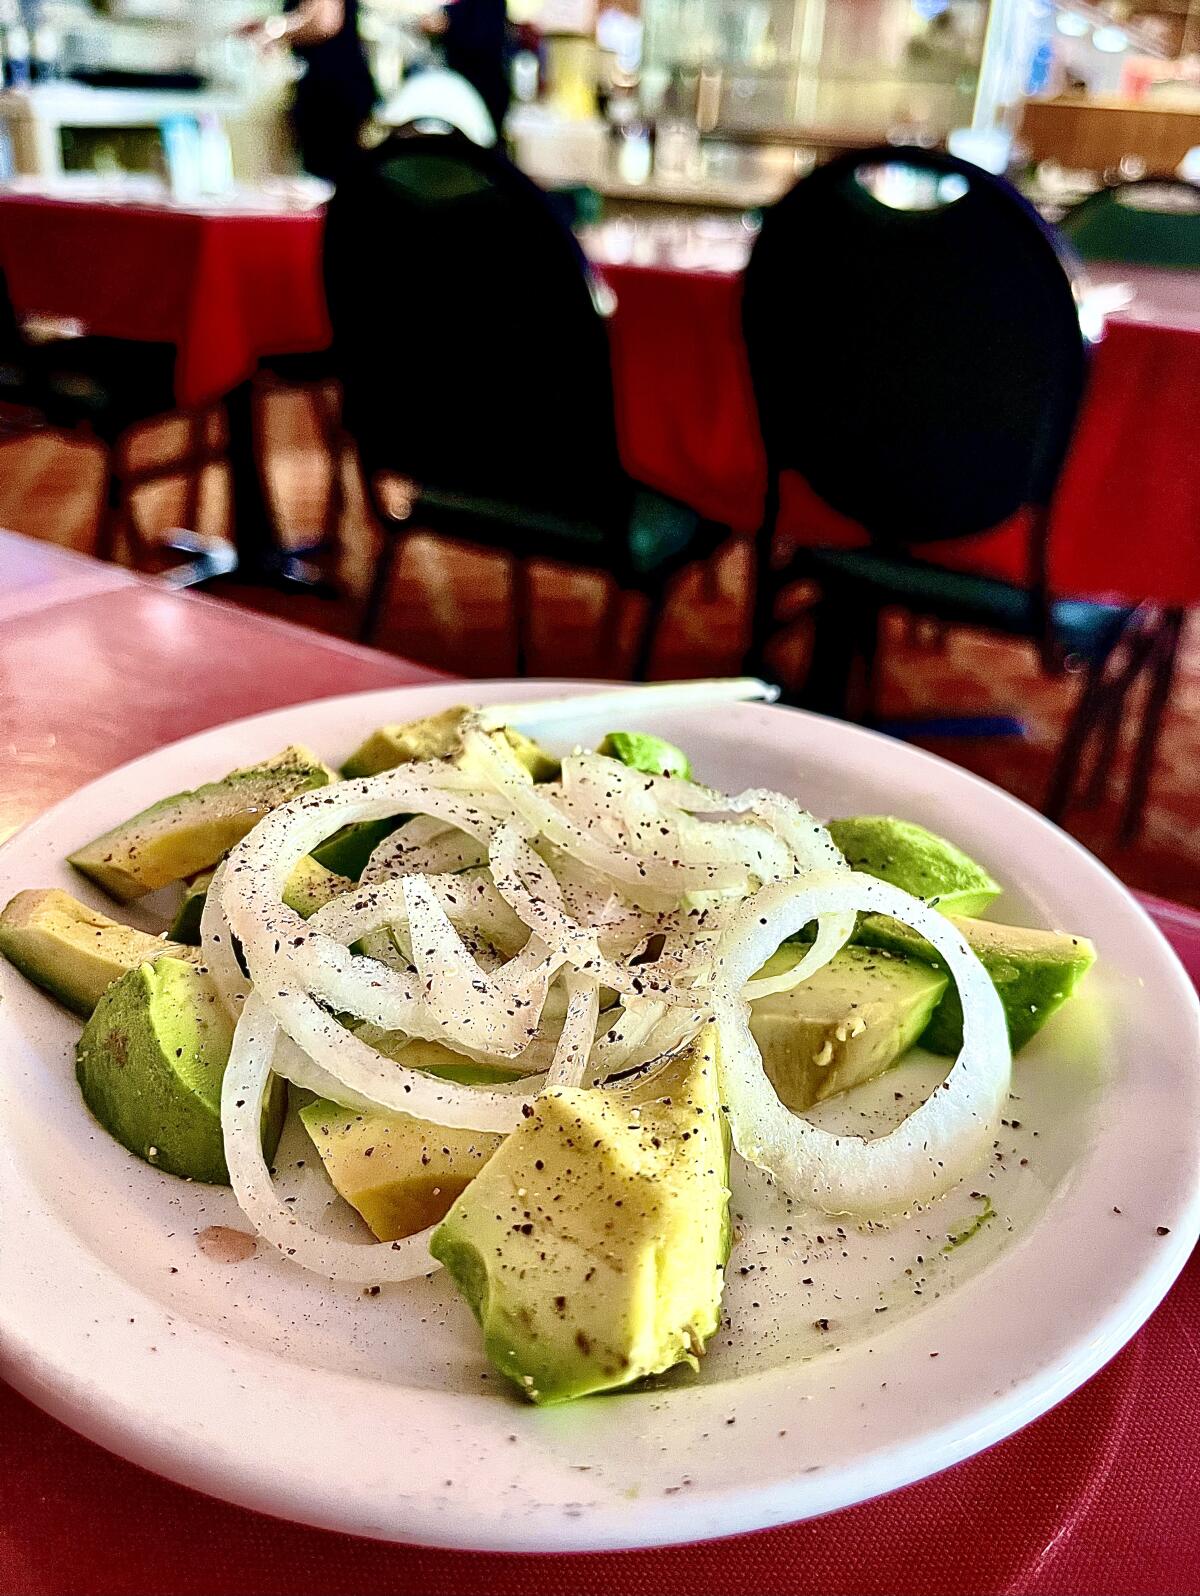 Avocado salad at the Cuban restaurant El Colmao in Los Angeles.